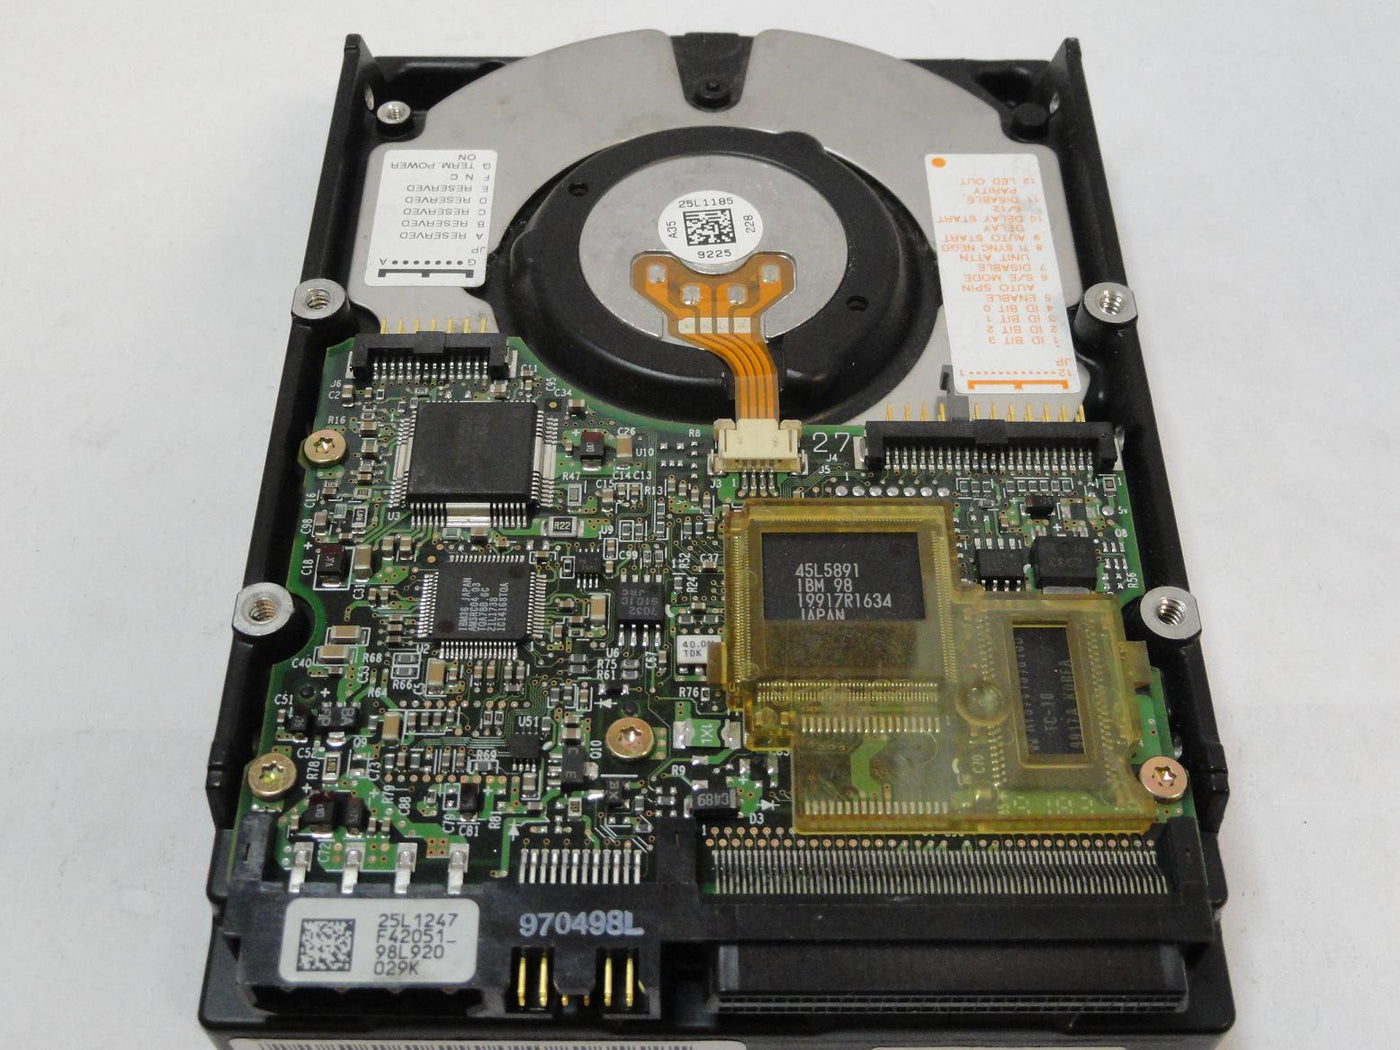 MC0096_07N3120_IBM 9.1GB SCSI 68 Pin 7200rpm 3.5in HDD - Image2